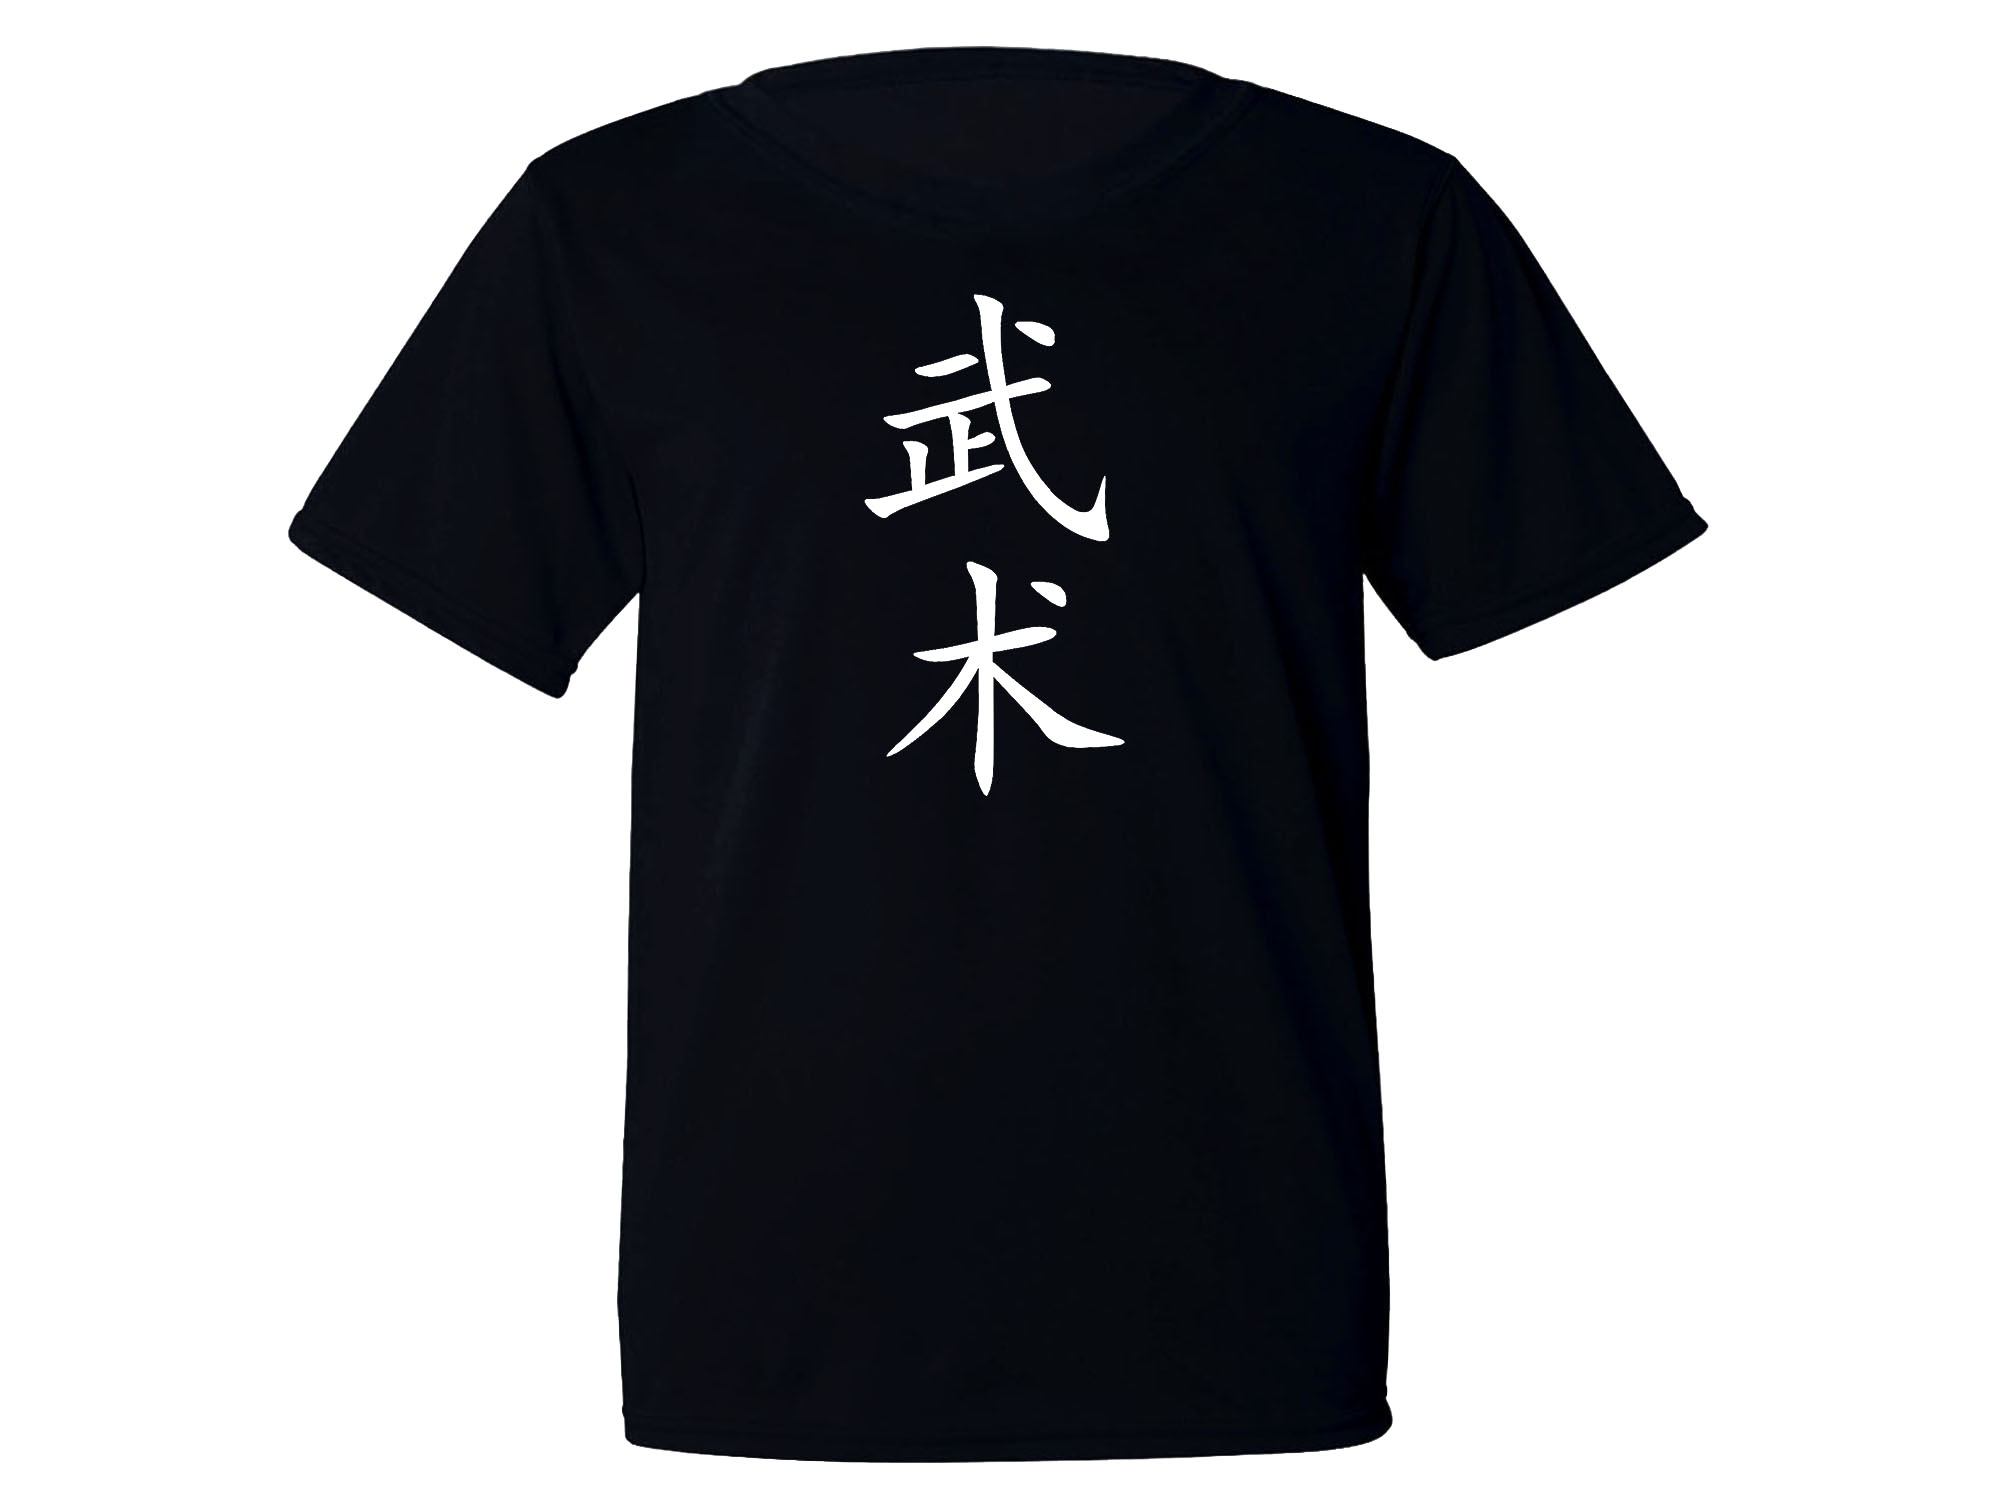 Wushu Chinese martial arts sweat proof fabric new t-shirt